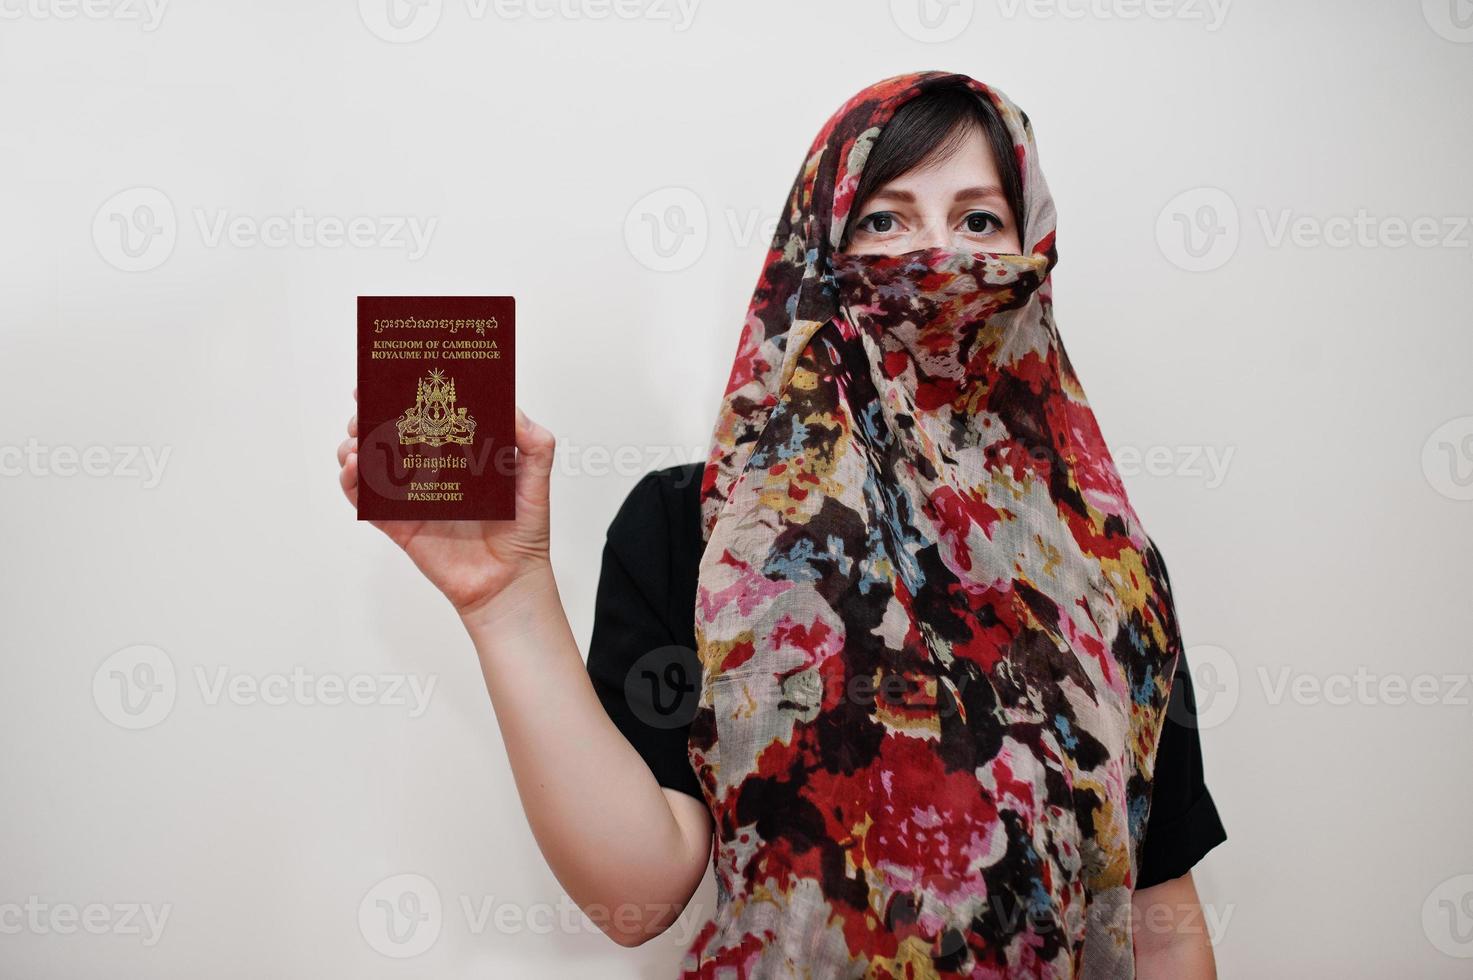 jovem muçulmana árabe em roupas hijab segura passaporte do reino do camboja no fundo da parede branca, retrato de estúdio. foto